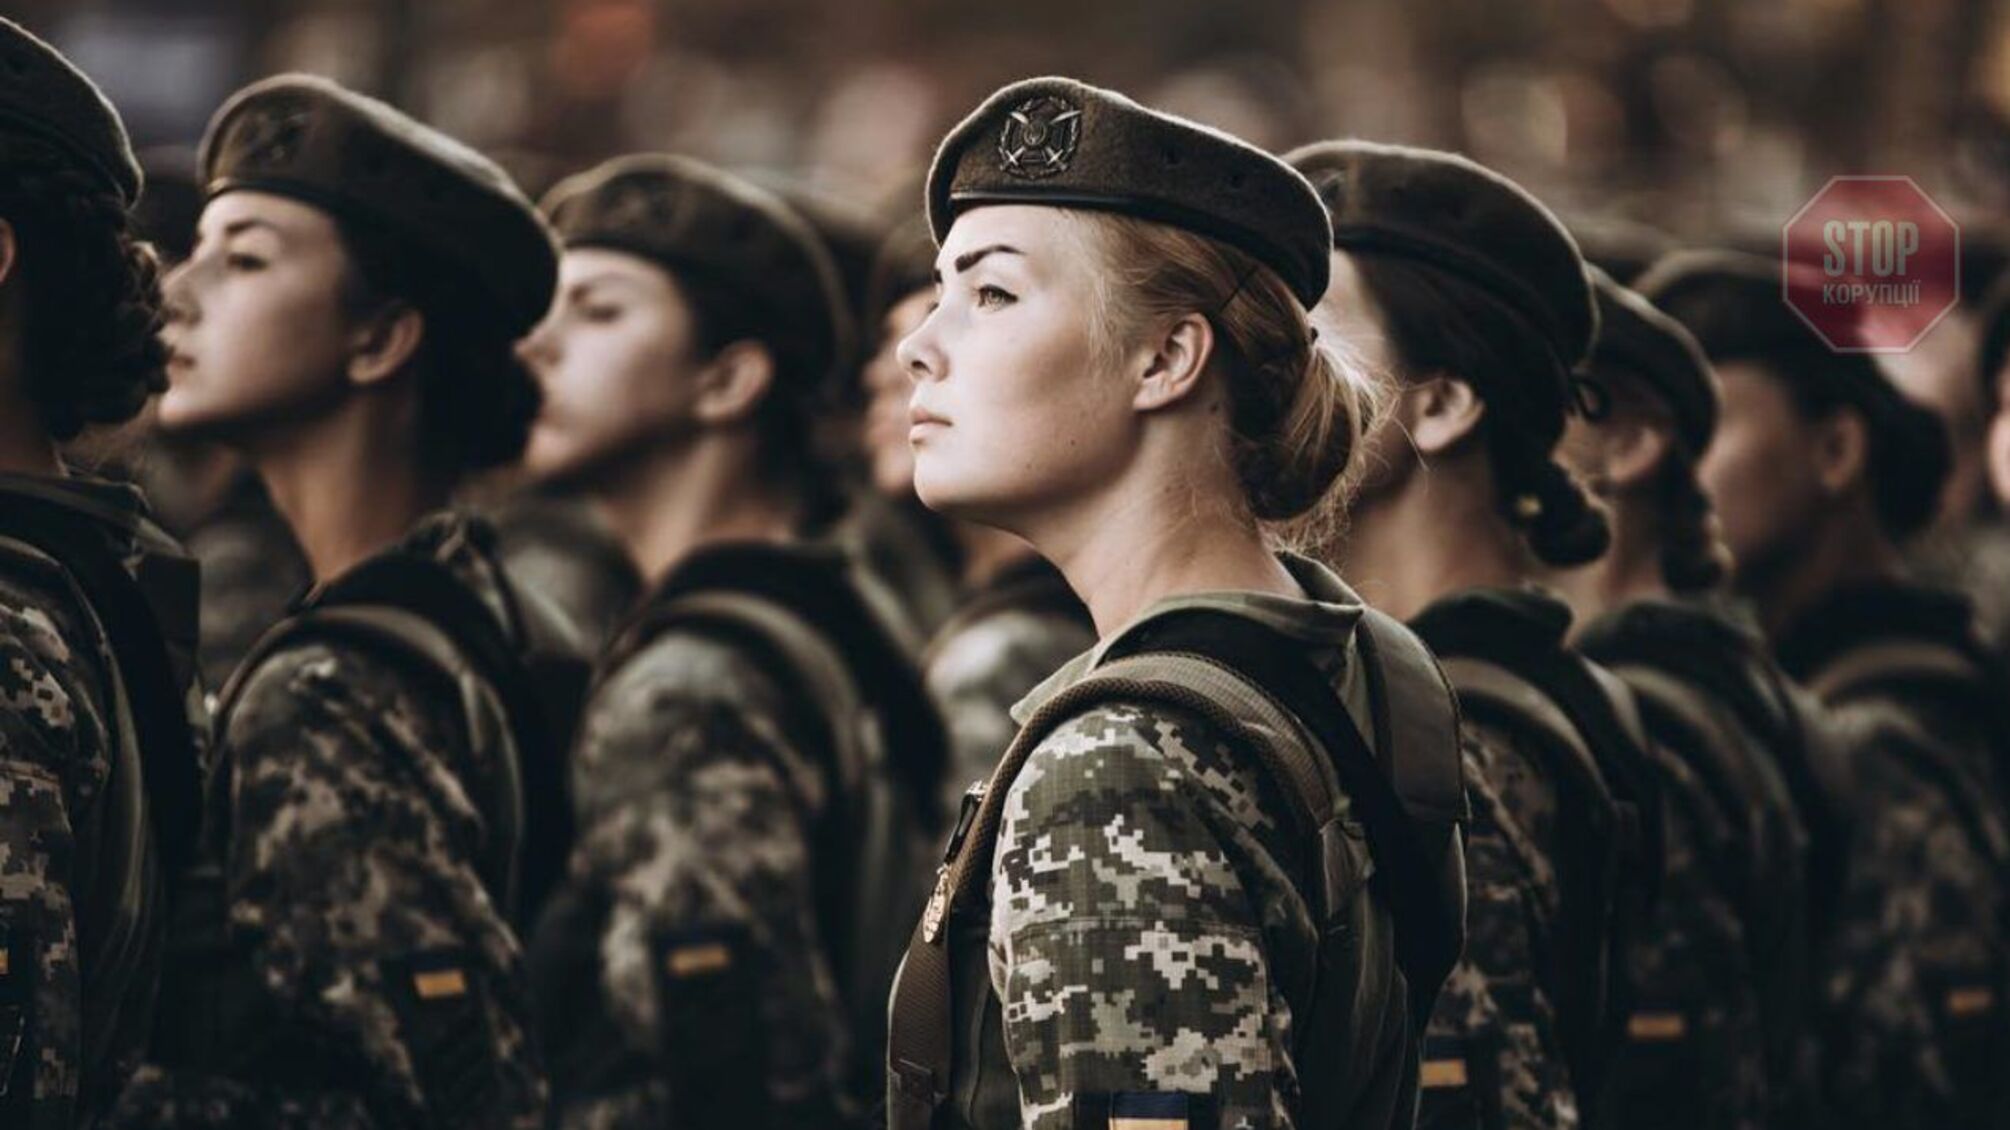 Бухгалтерки та юристки: в Україні жінок братимуть на військовий облік